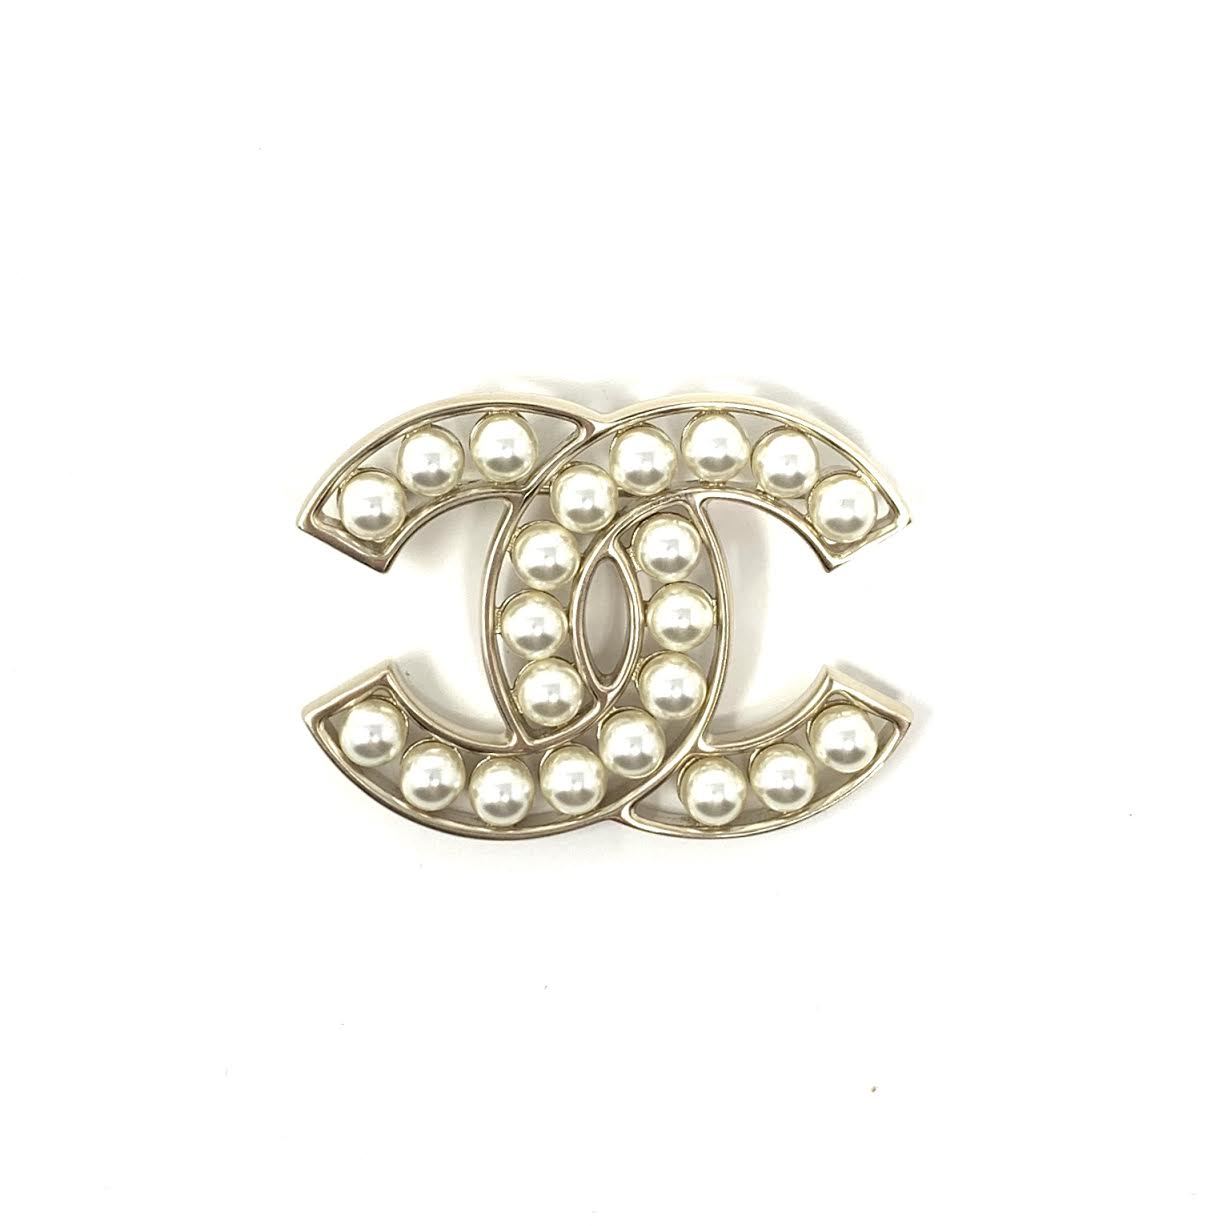 Cc pin & brooche Chanel White in Plastic - 29859772